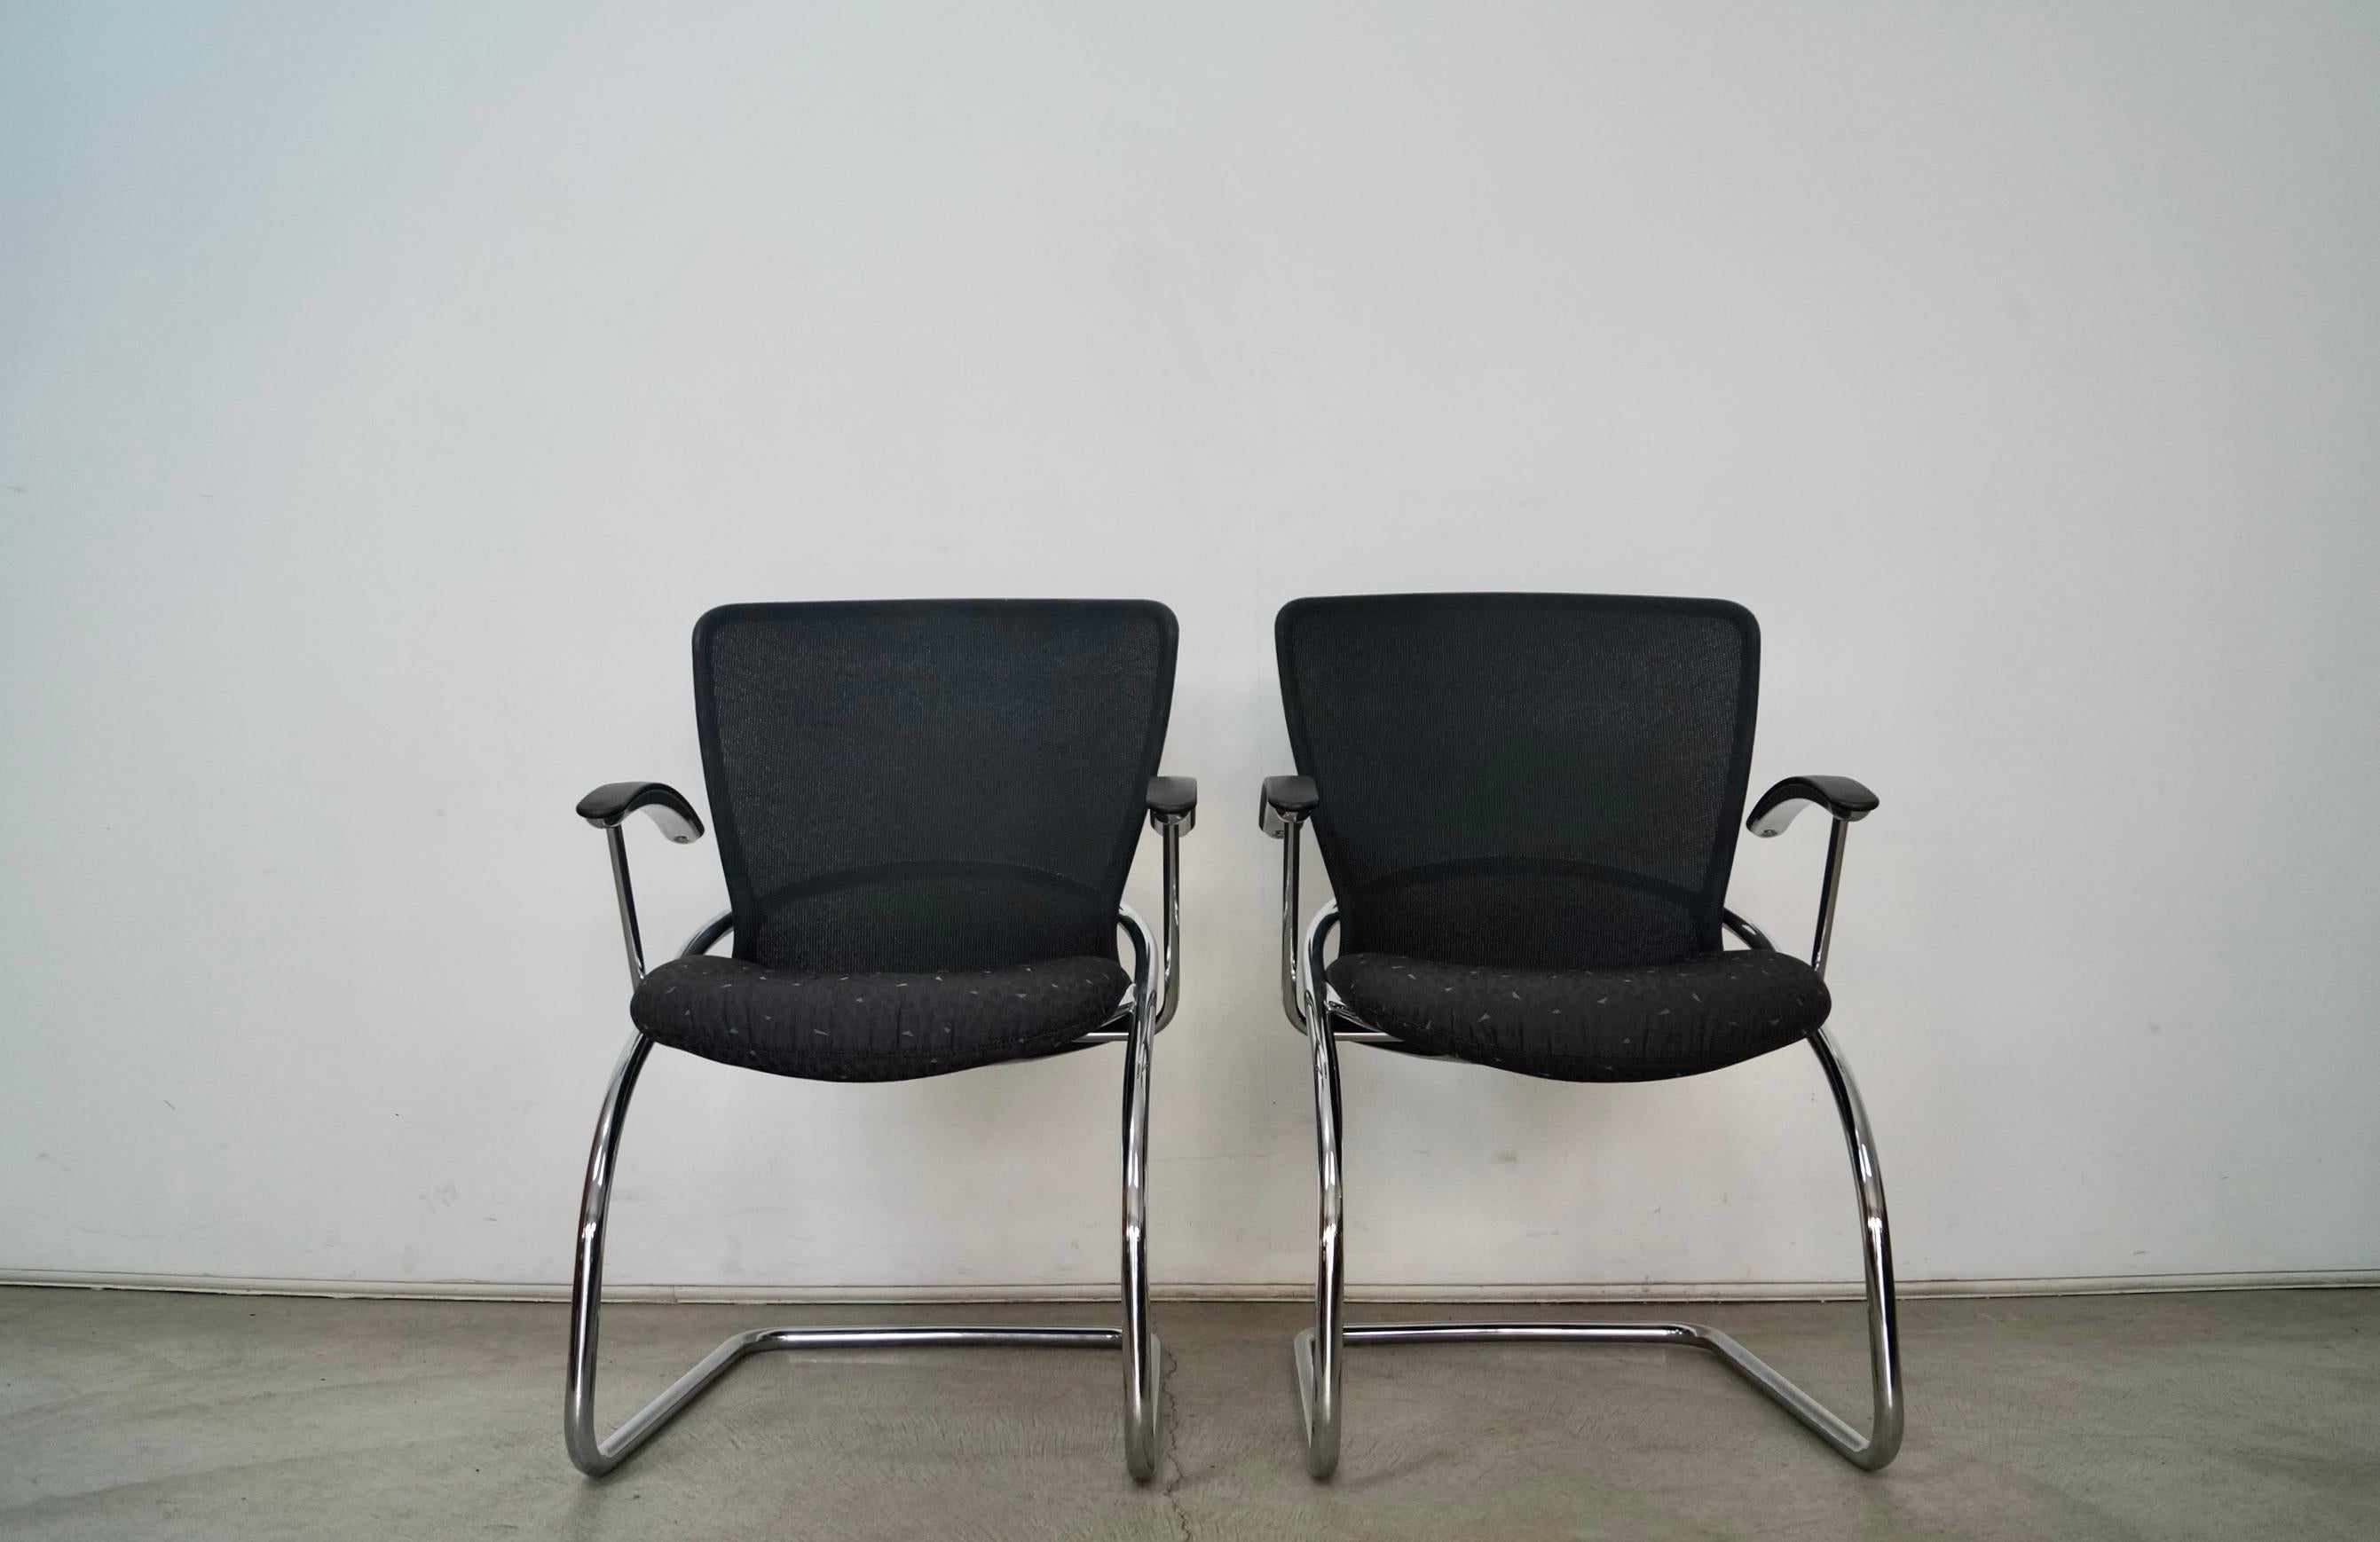 Paire de fauteuils Vintage Postmoderne à vendre. Il s'agit des chaises Diva, fabriquées par l'entreprise de design Konig + Neurath en 1999. Elles ont été fabriquées en Allemagne et ont un style Bauhaus. Ils sont en excellent état et ont un design